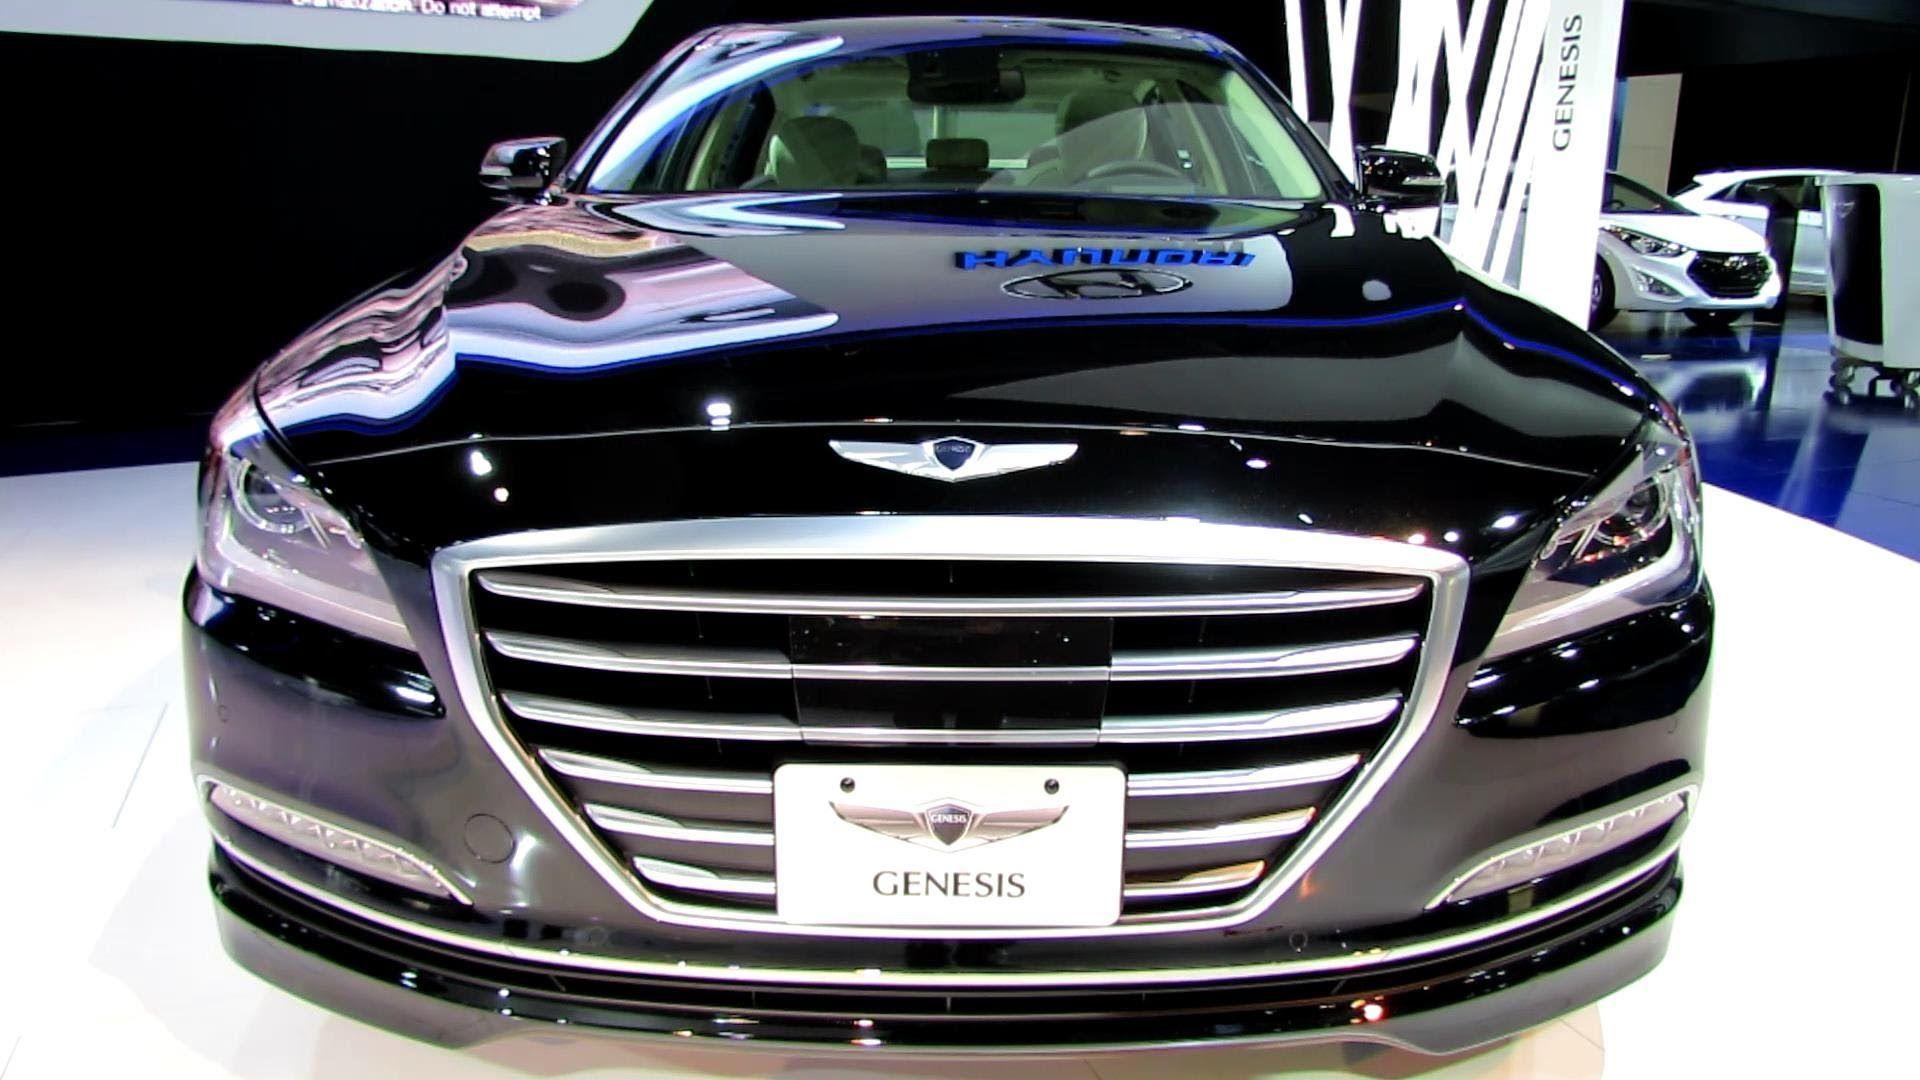 Hyundai Genesis and Interior Walkaround